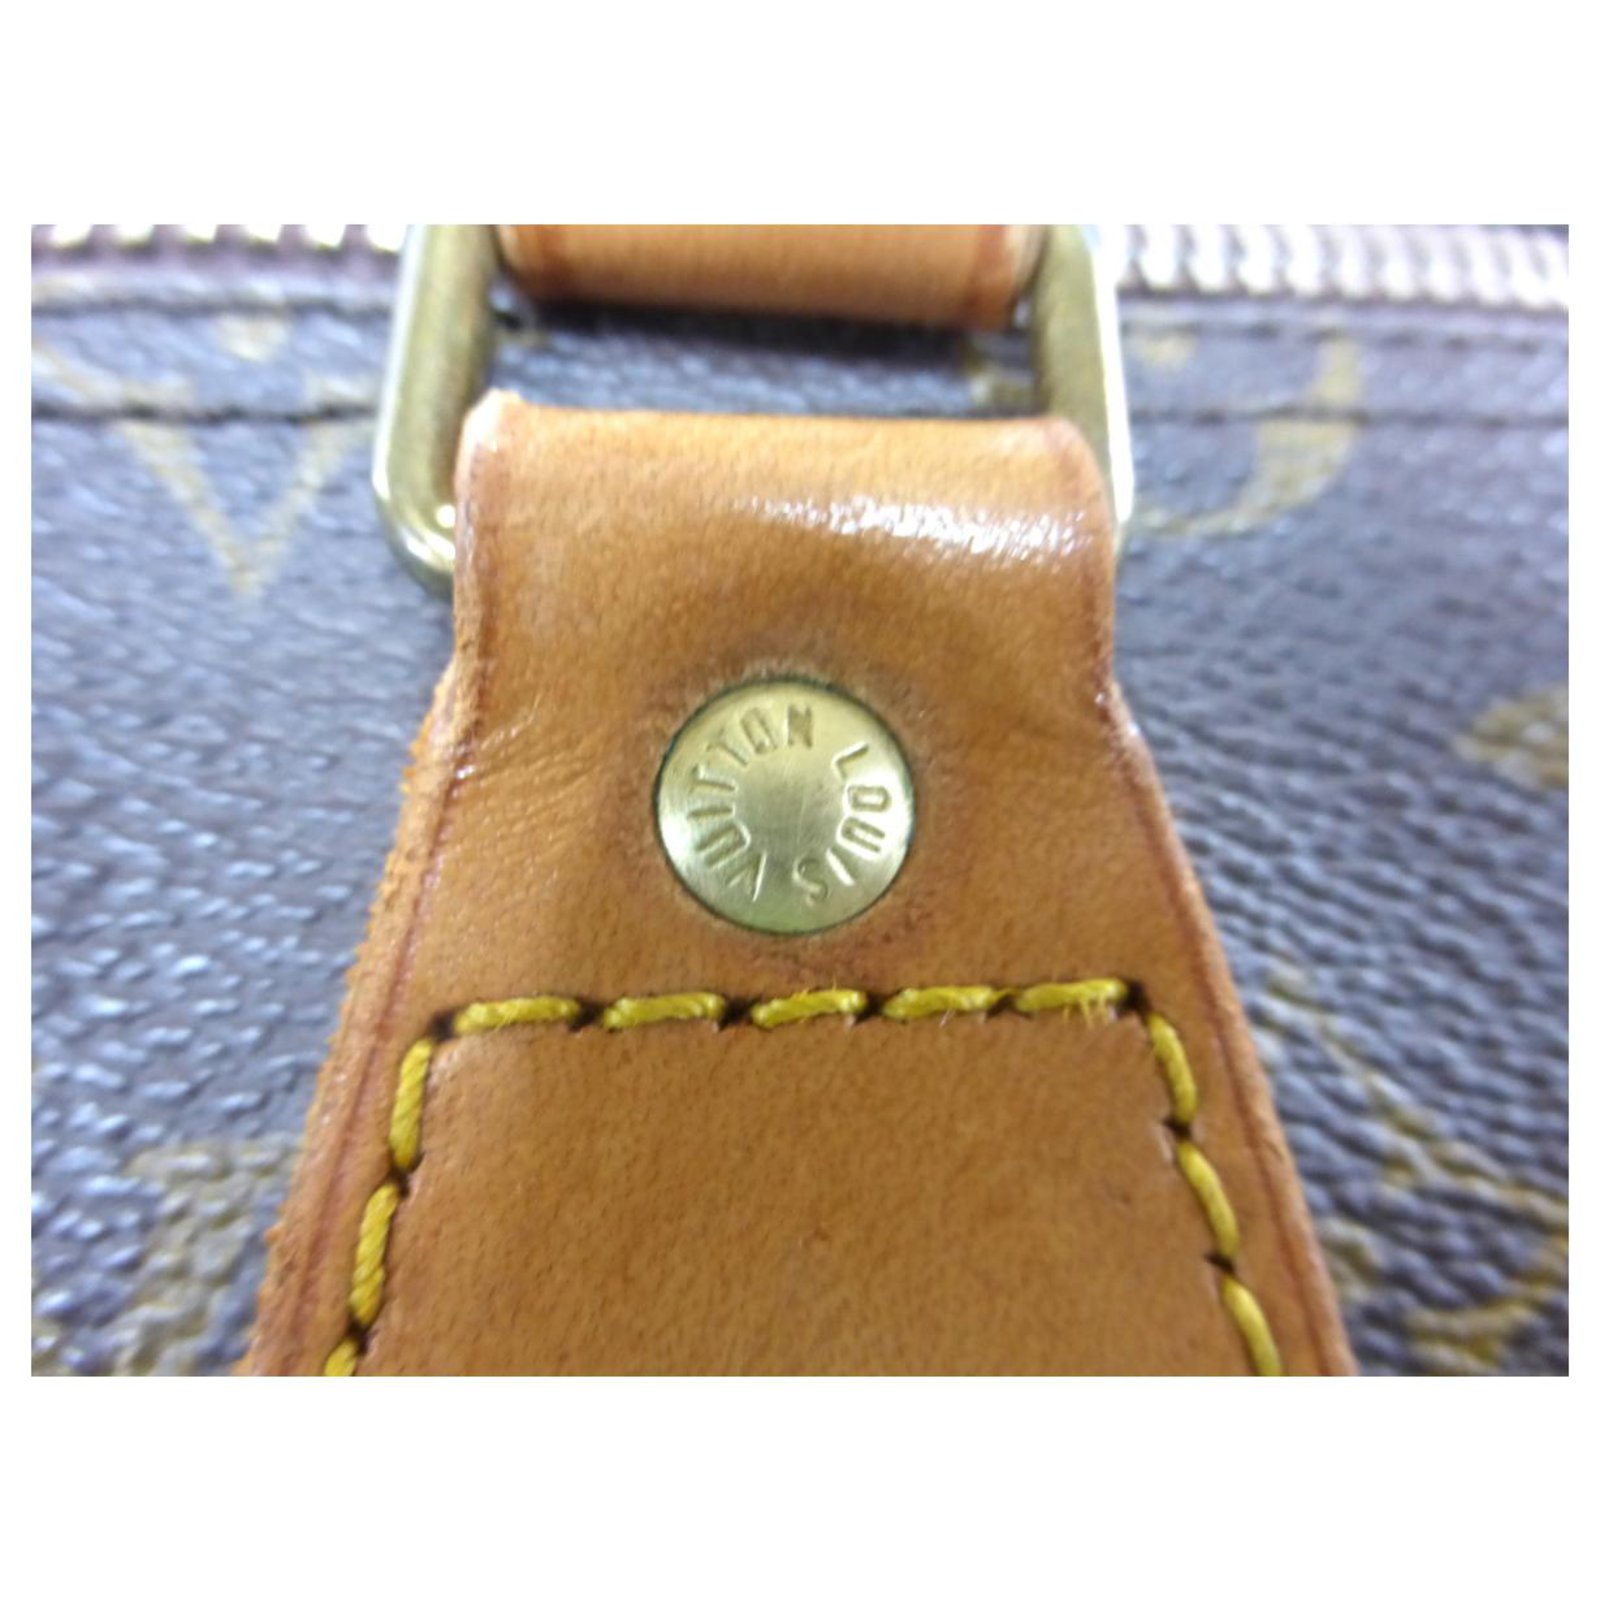 Louis Vuitton LV speedy 35 monogram Brown Leather ref.330221